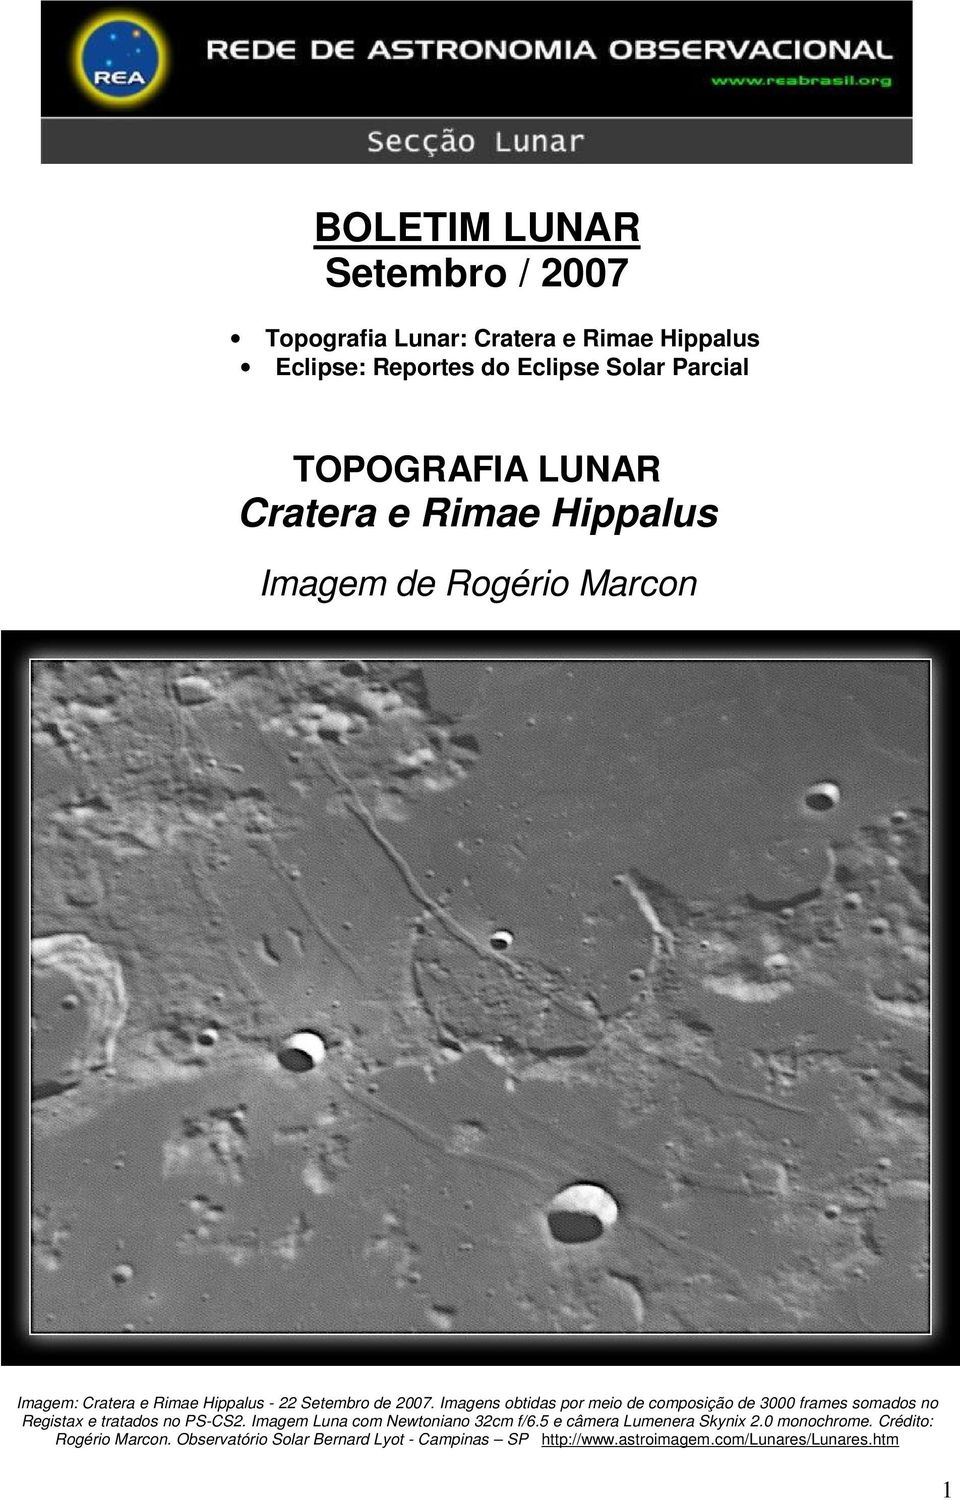 Imagens obtidas por meio de composição de 3000 frames somados no Registax e tratados no PS-CS2. Imagem Luna com Newtoniano 32cm f/6.